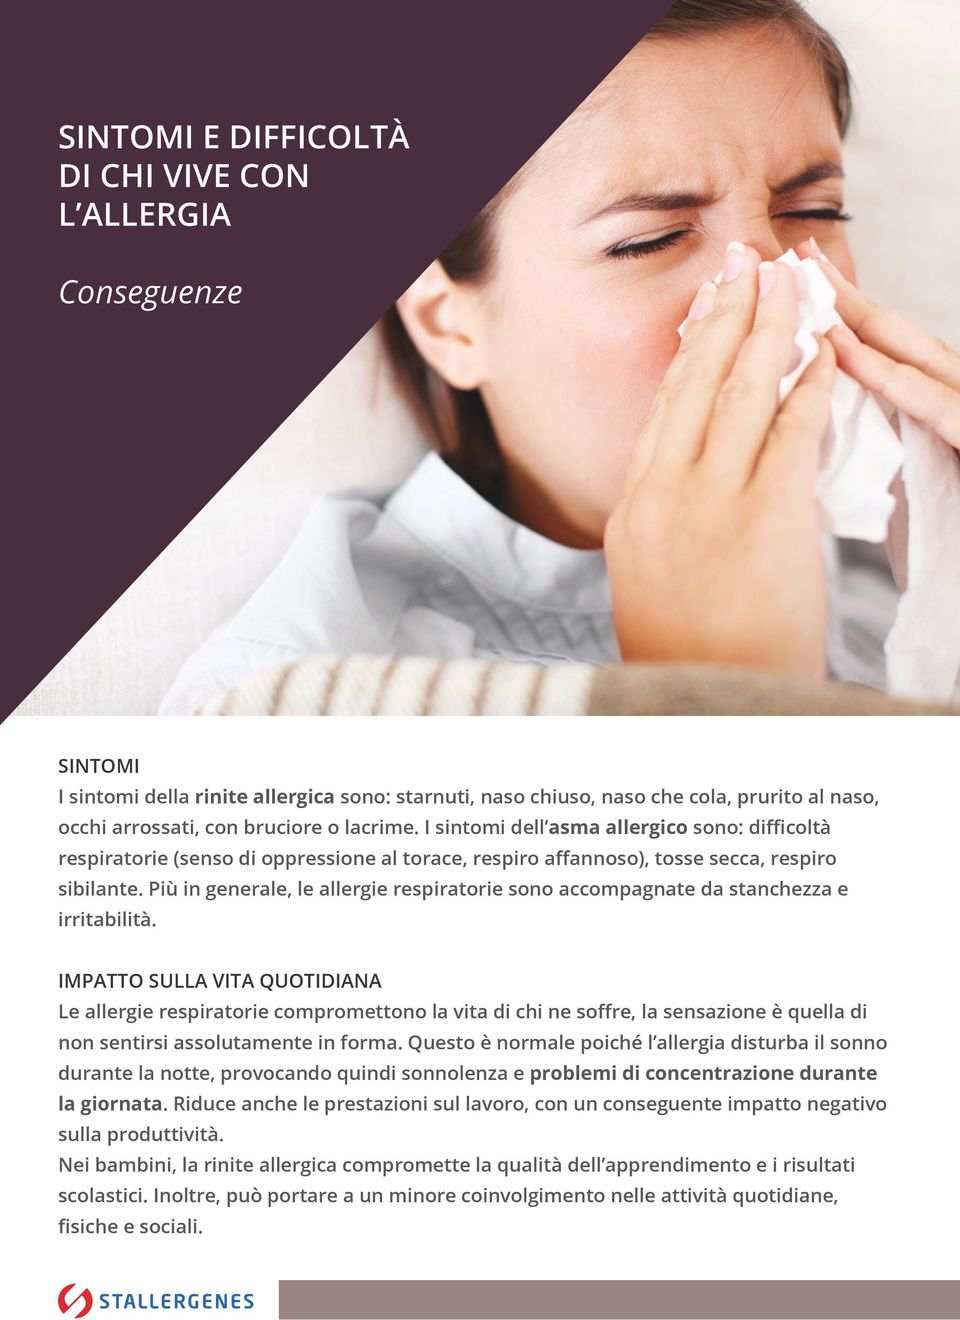 Più in generale, le allergie respiratorie sono accompagnate da stanchezza e irritabilità.